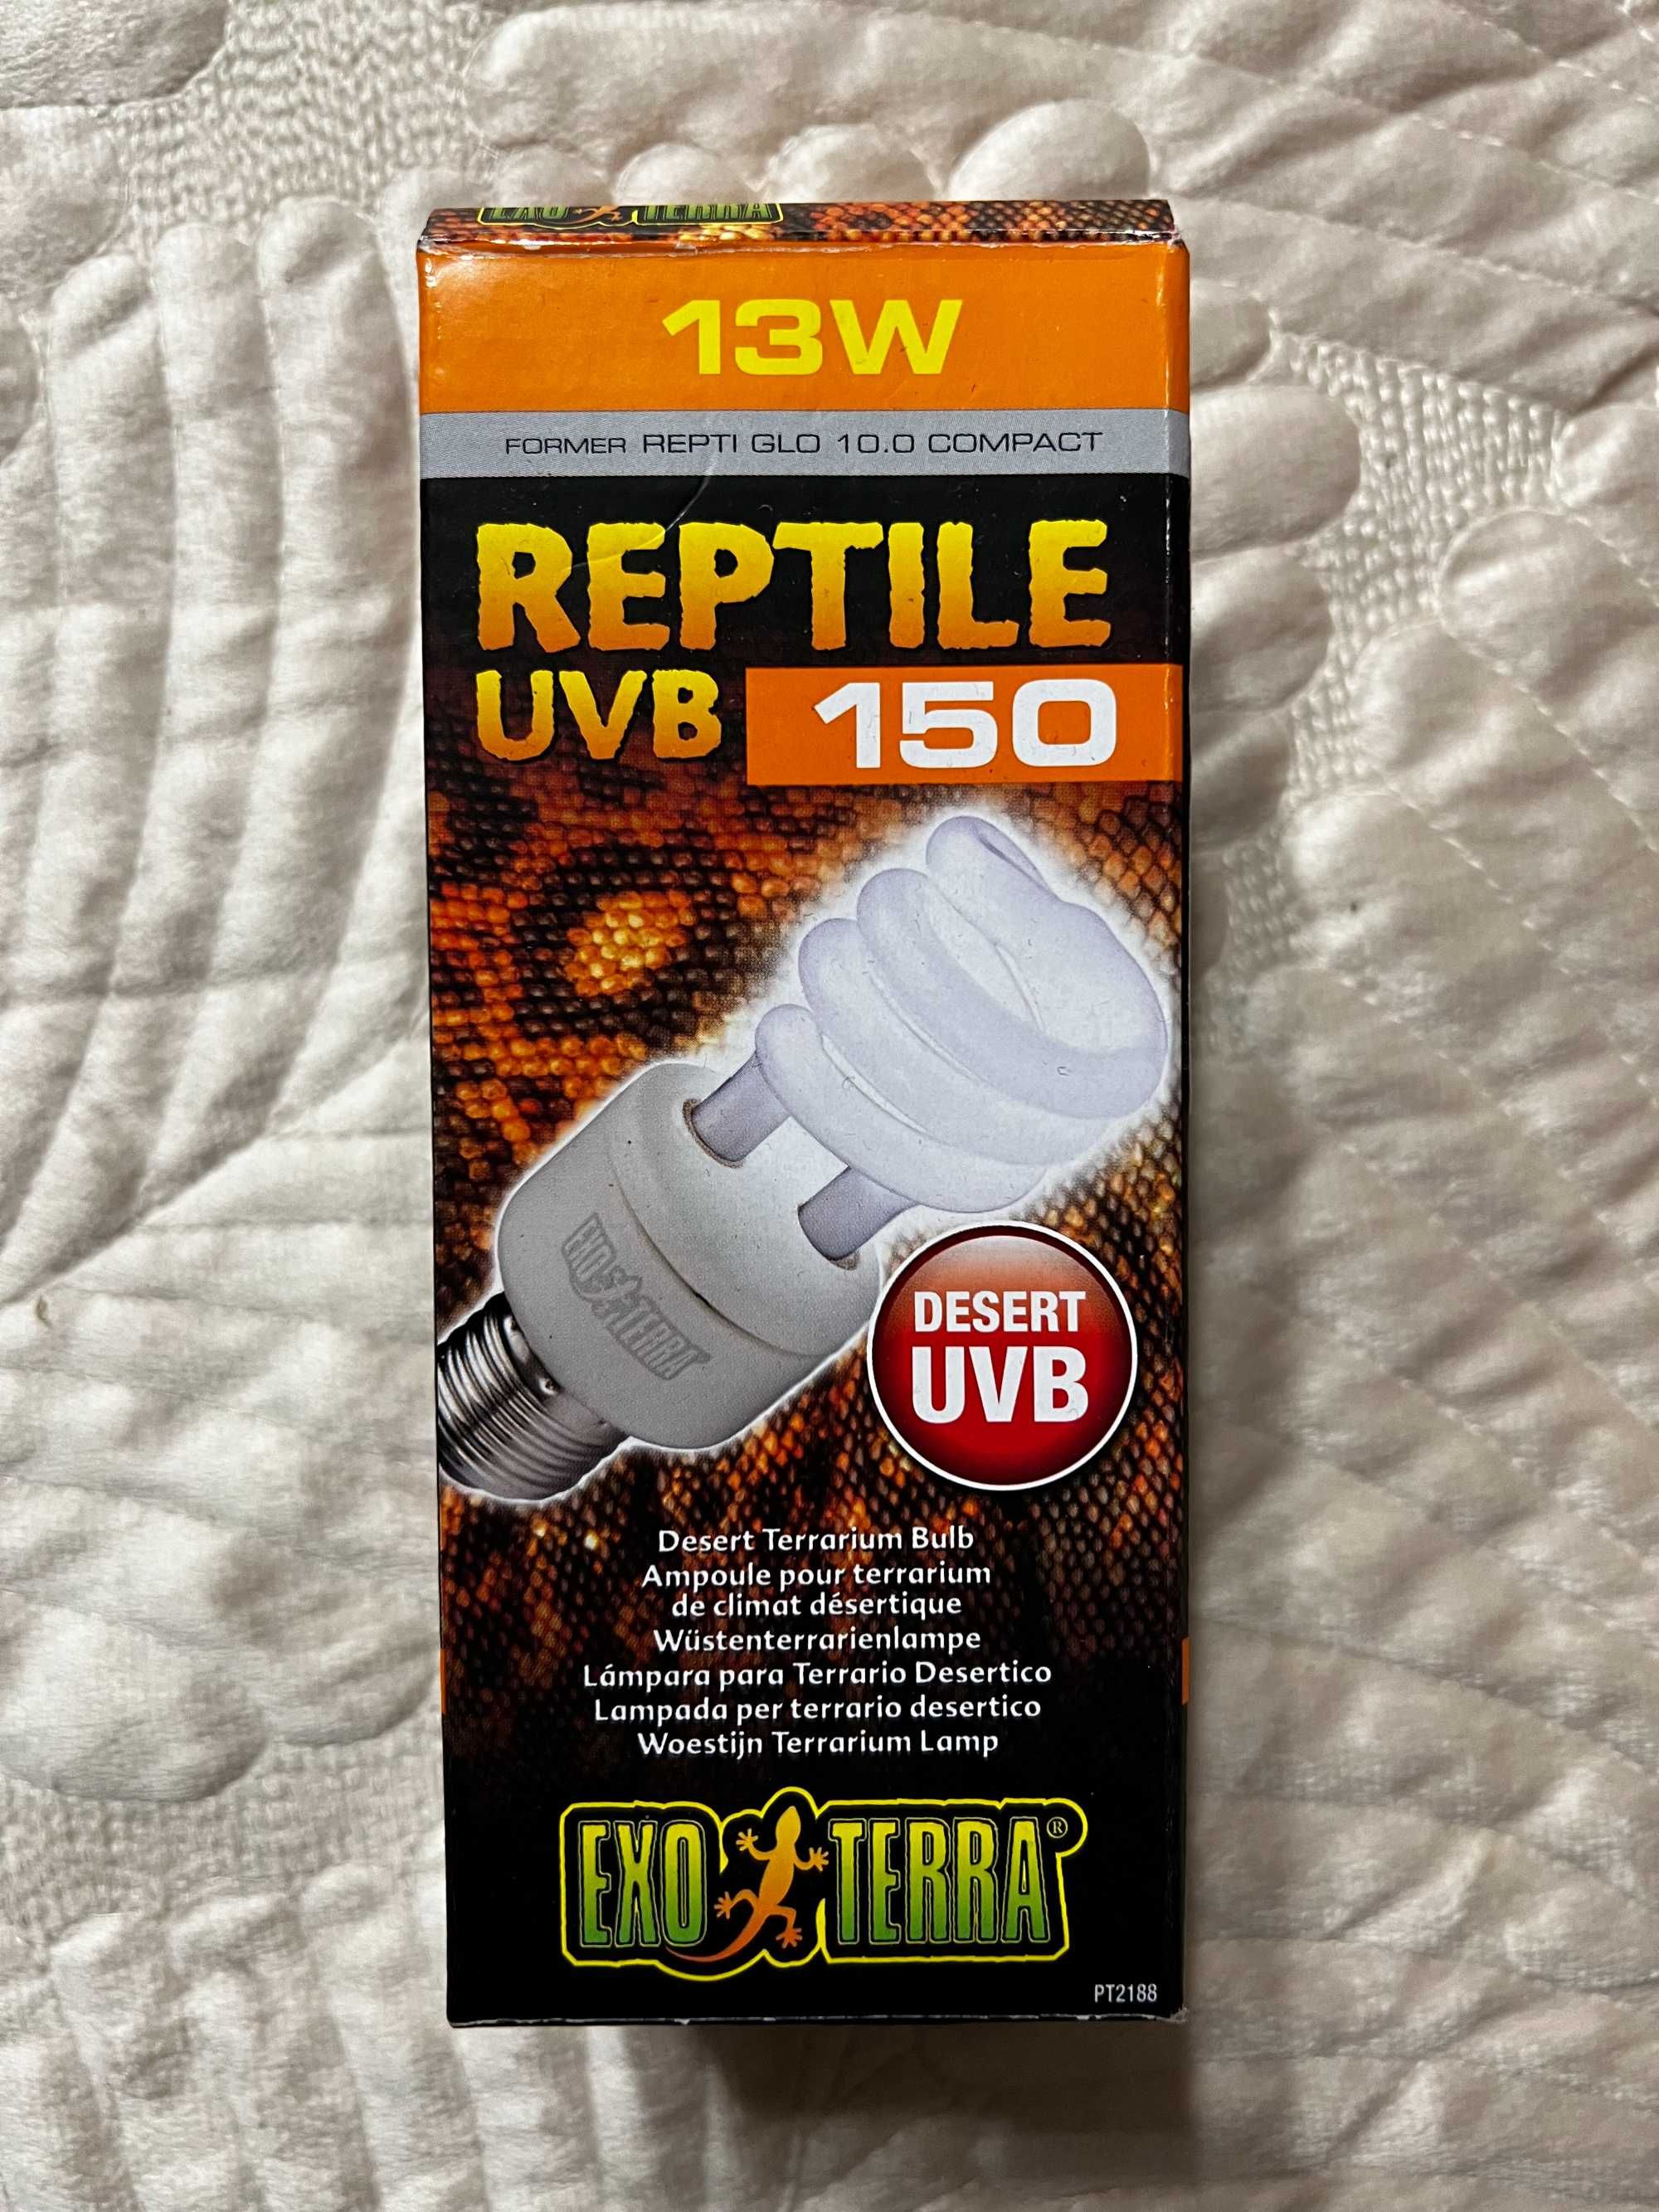 TANIO / Świetlówka Reptile UVB 150/13W EXO TERRA. Gady